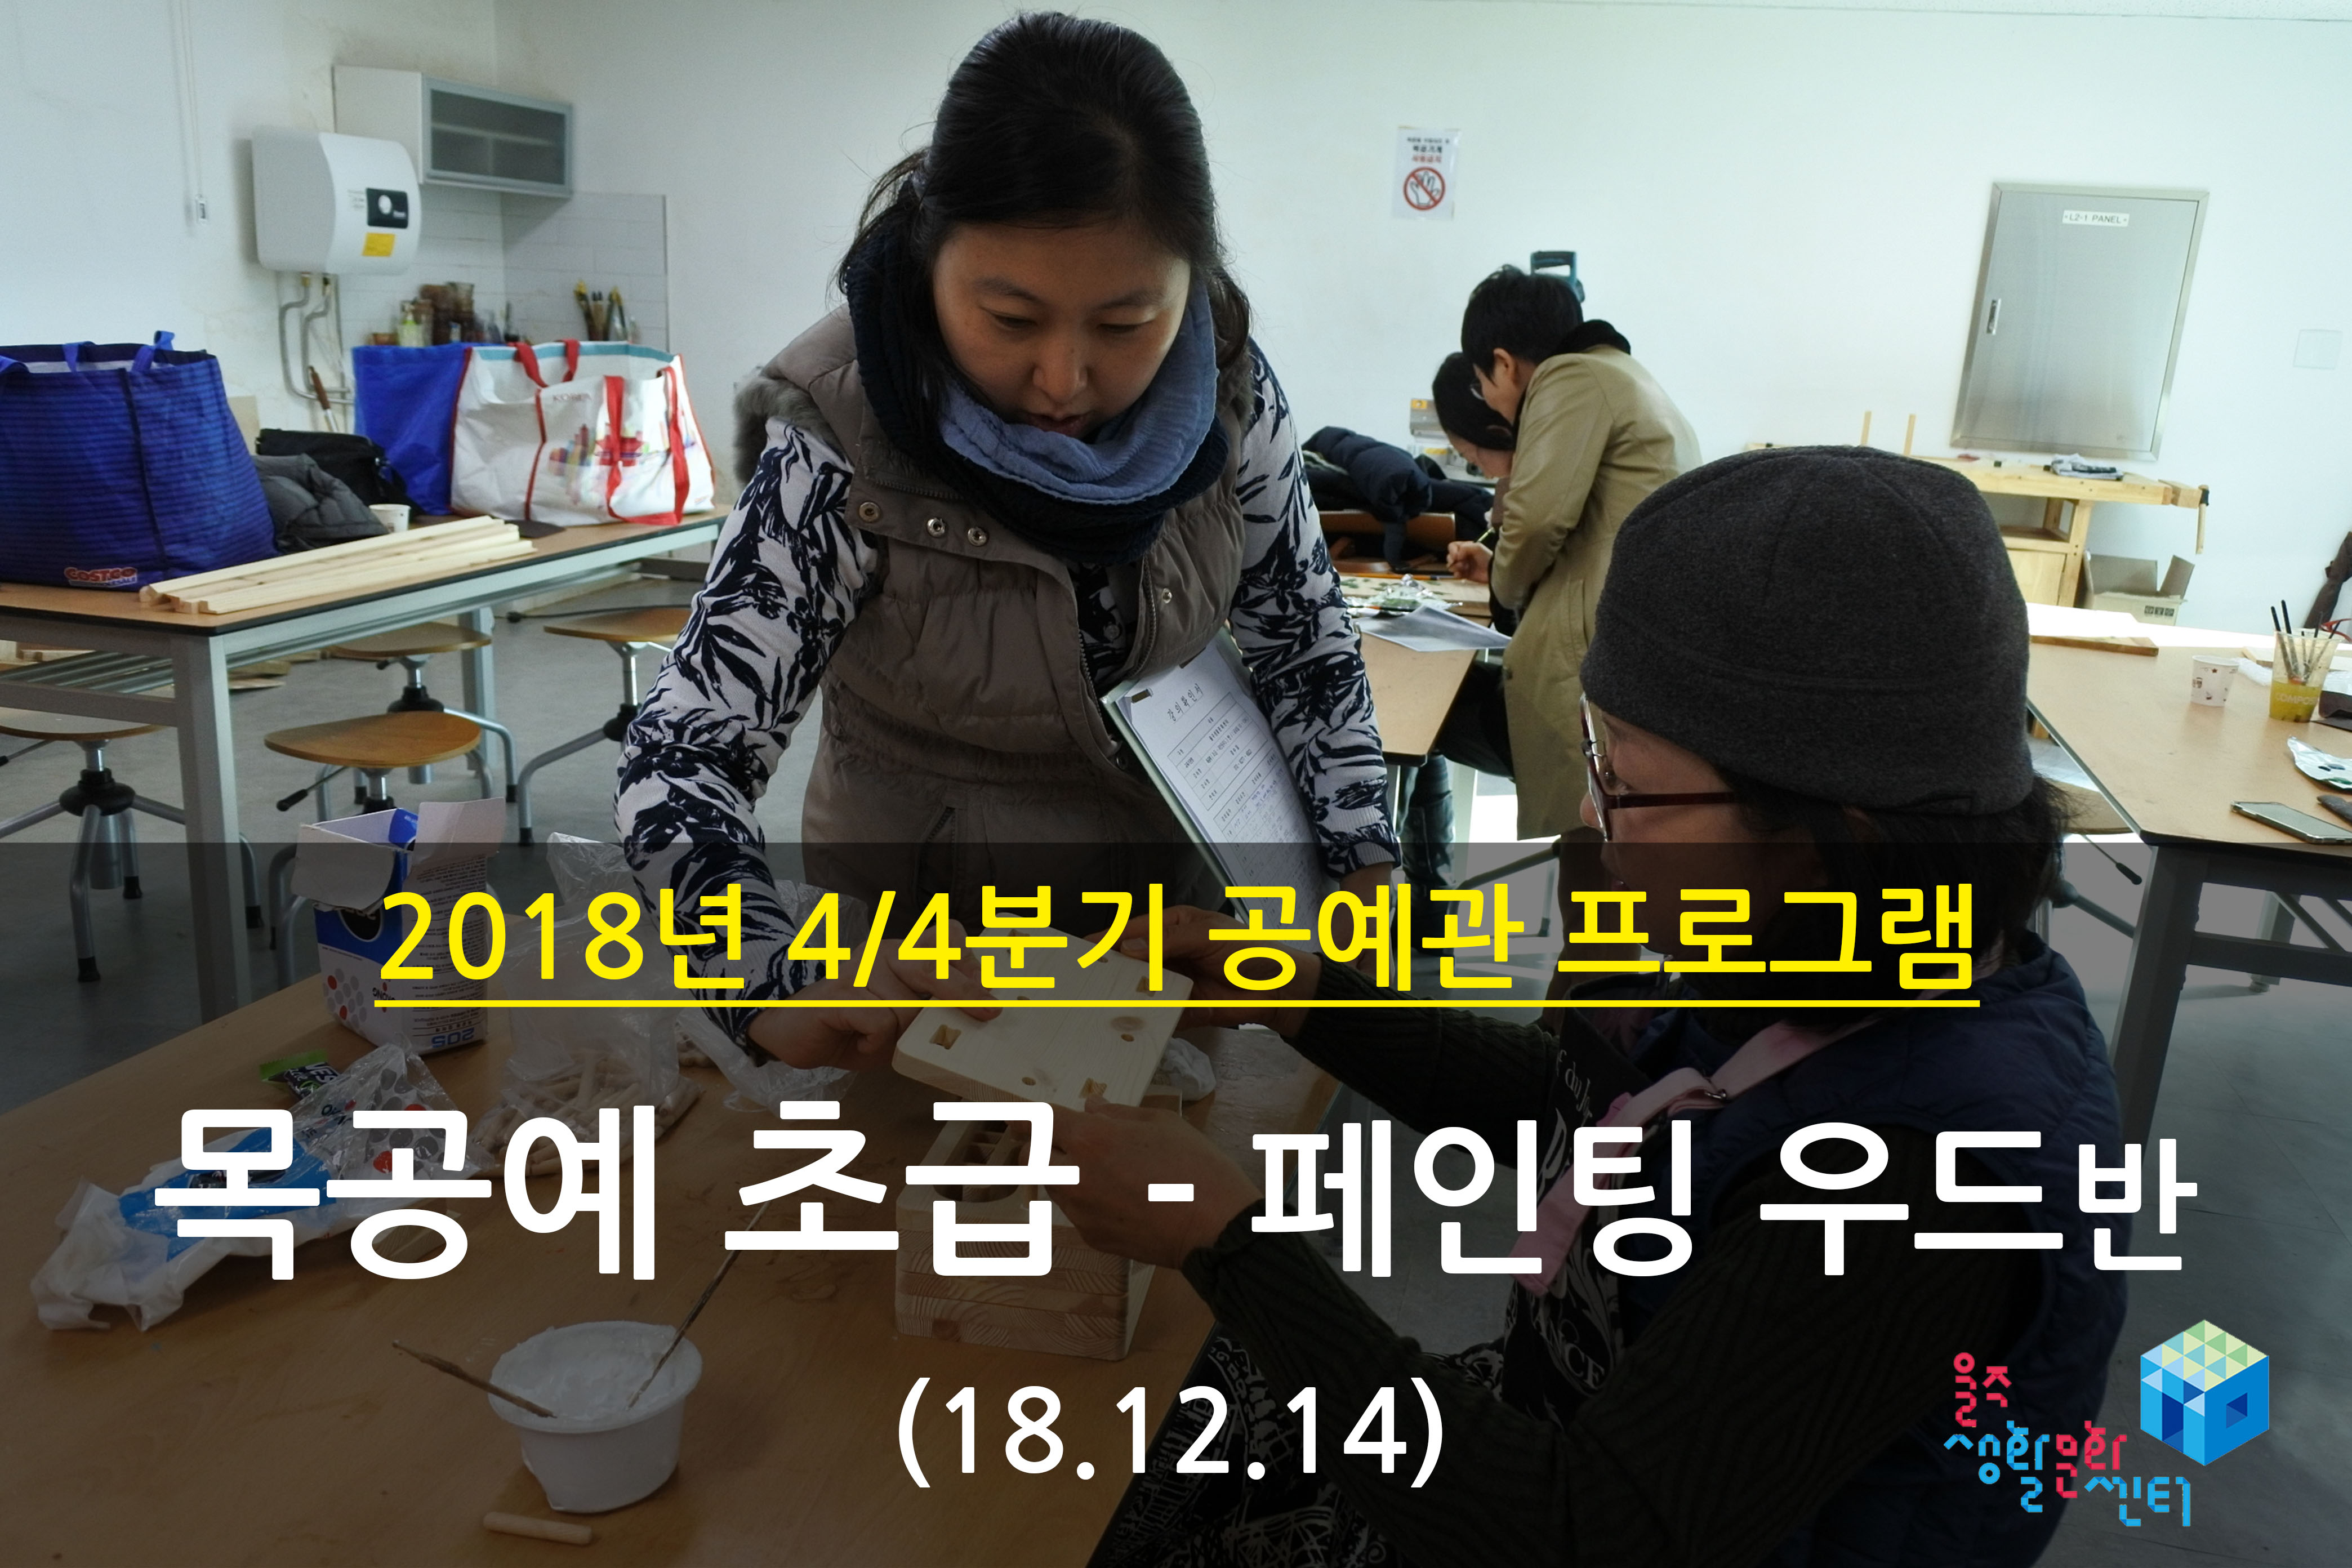 2018.12.14 _ 목공예 초급 - 페인팅우드반 _ 4/4분기 10주차 수업